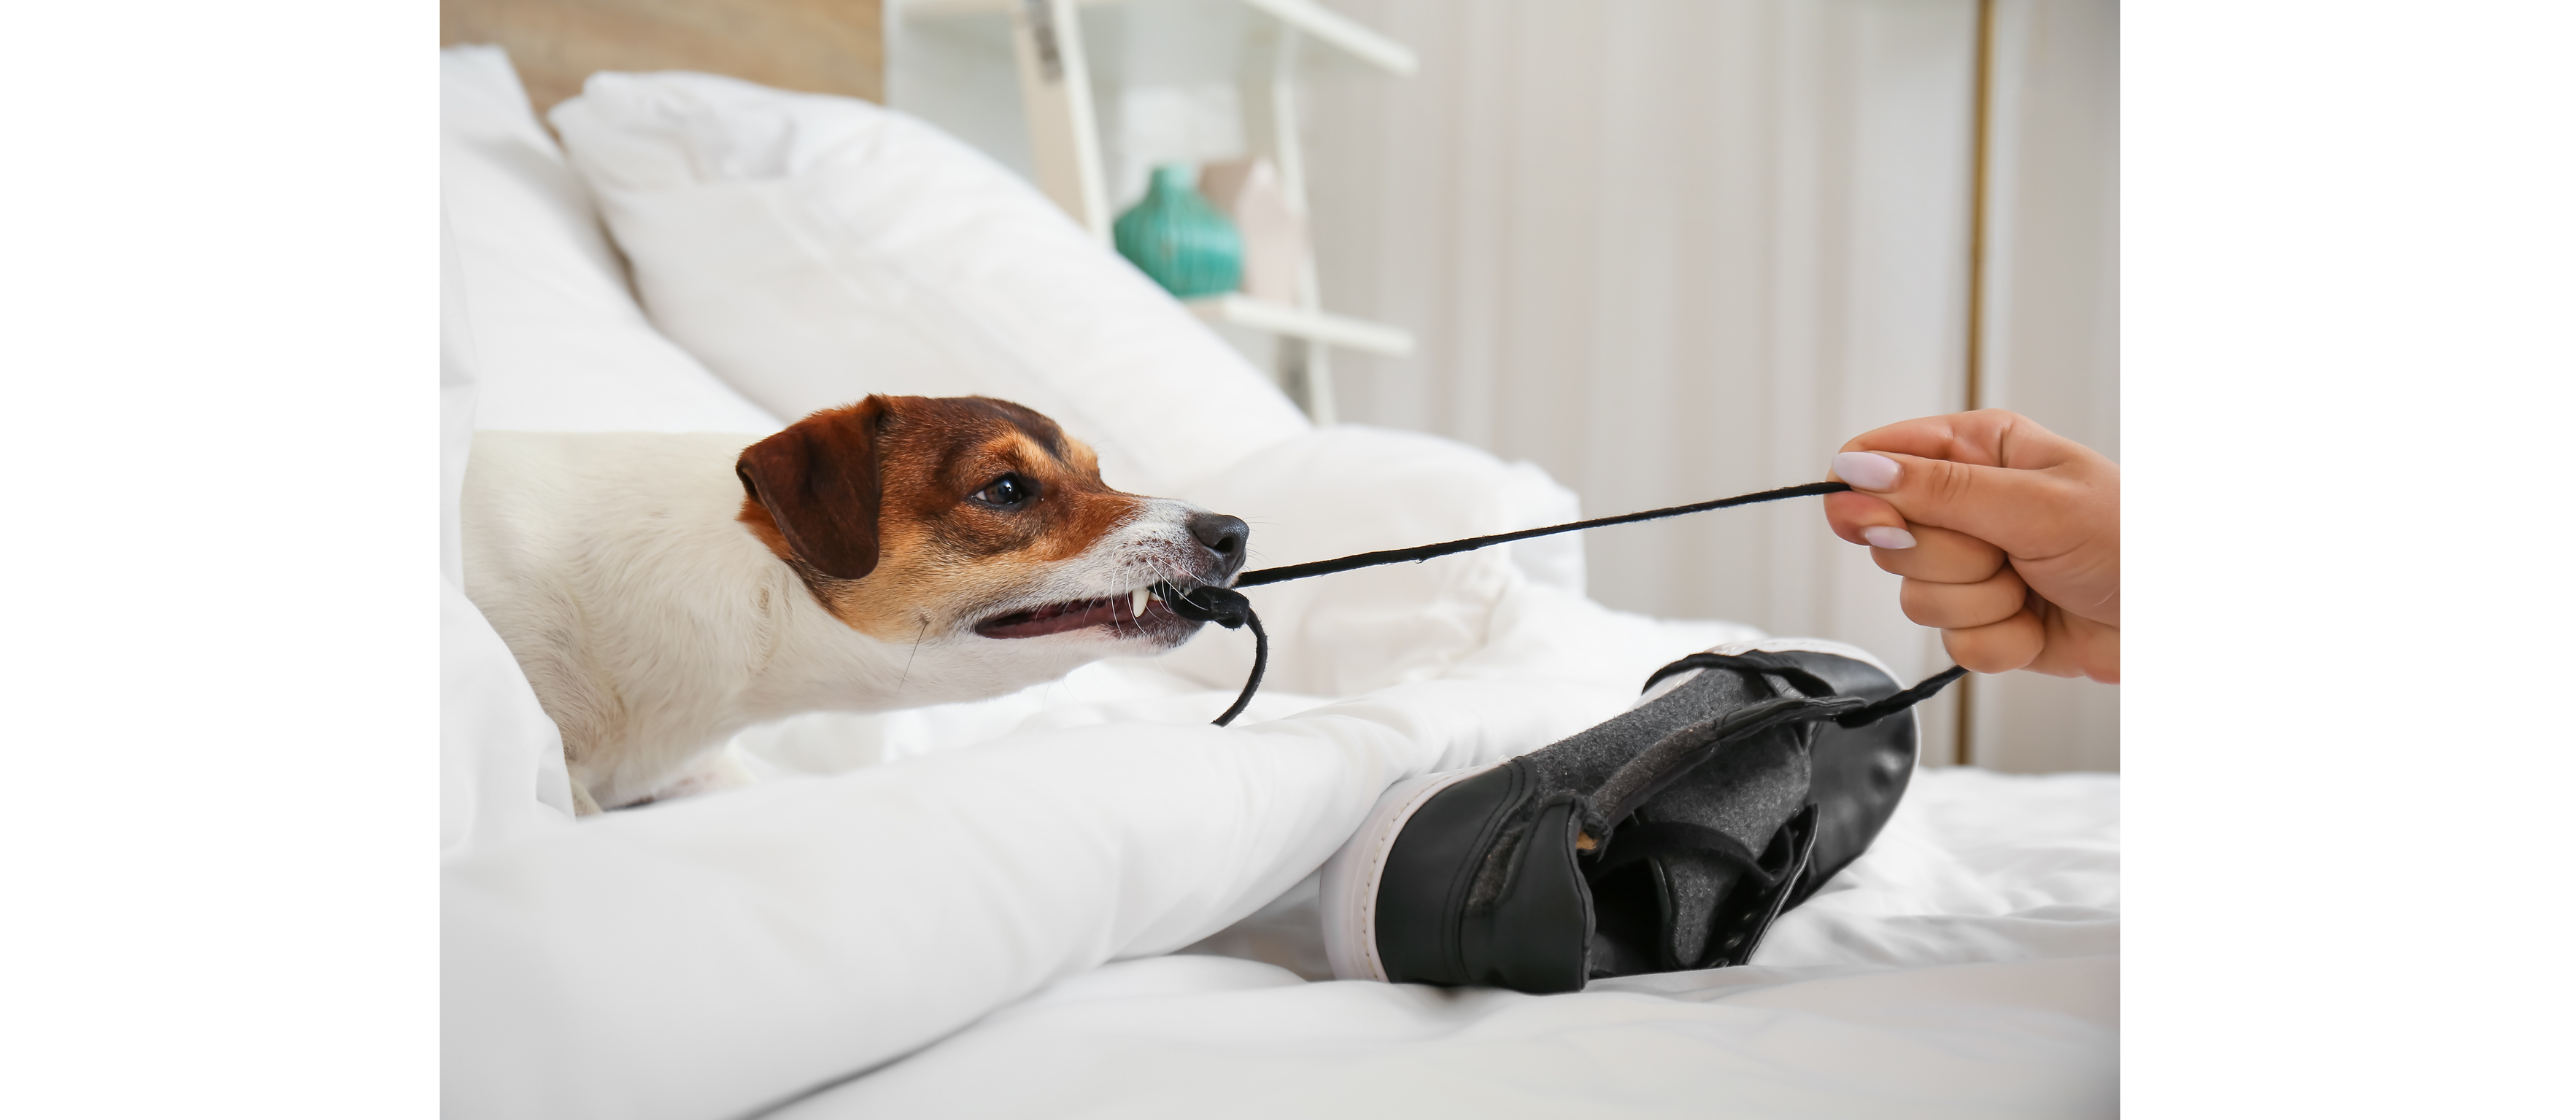 Problemtherapie, Hundepsychologe, Verhaltenstherapie in der professionellen Hundeschule in Krailling bei München mit Indoor Training